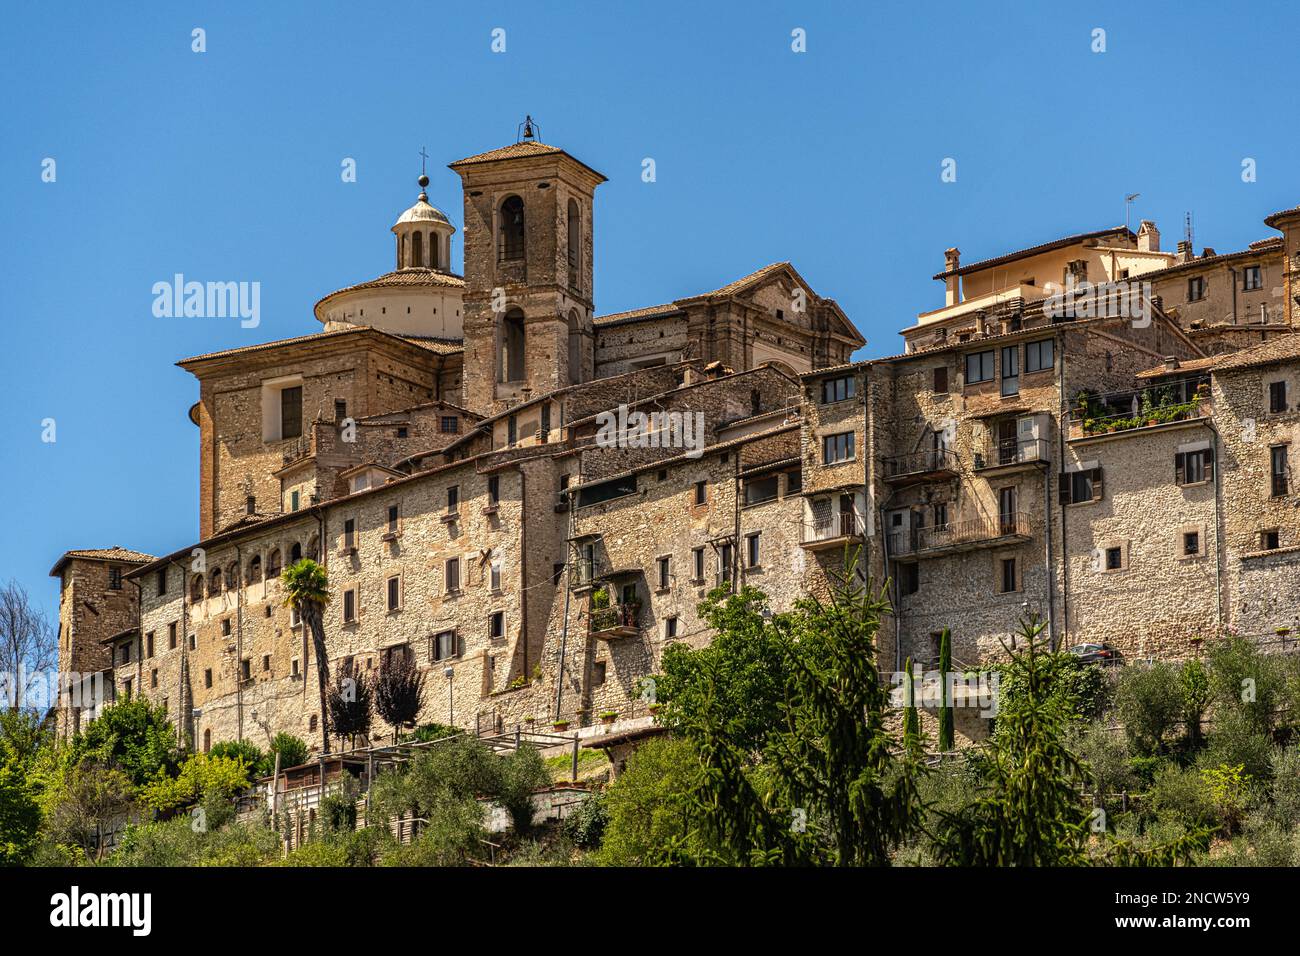 Die historische mittelalterliche Stadt Contigliano hoch oben auf einem Hügel mit Blick auf die Rieti-Ebene. Contigliano, Provinz Rieti, Latium, Italien, Europa Stockfoto